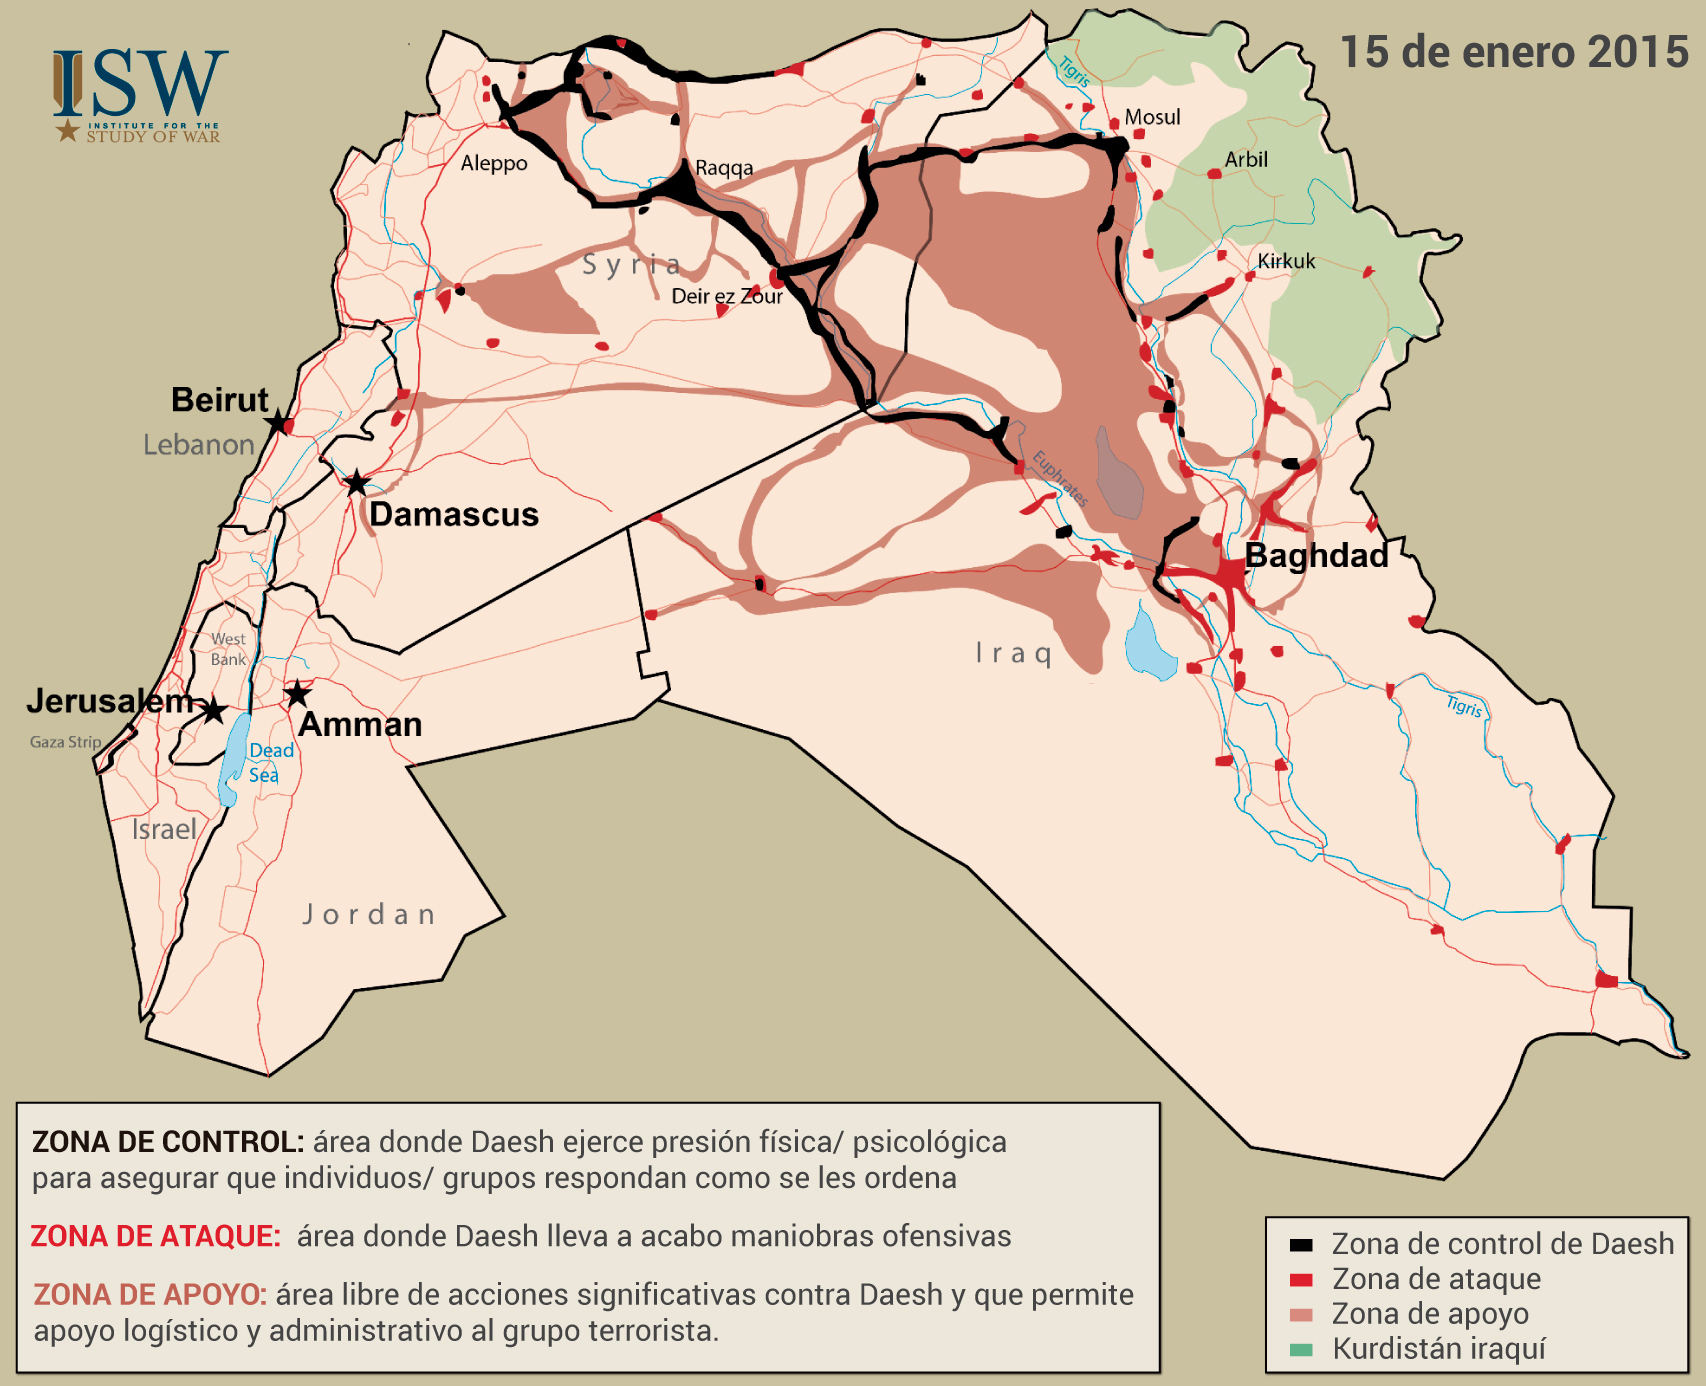 Mapa del santuario del Estado Islámico en Siria e Irak.